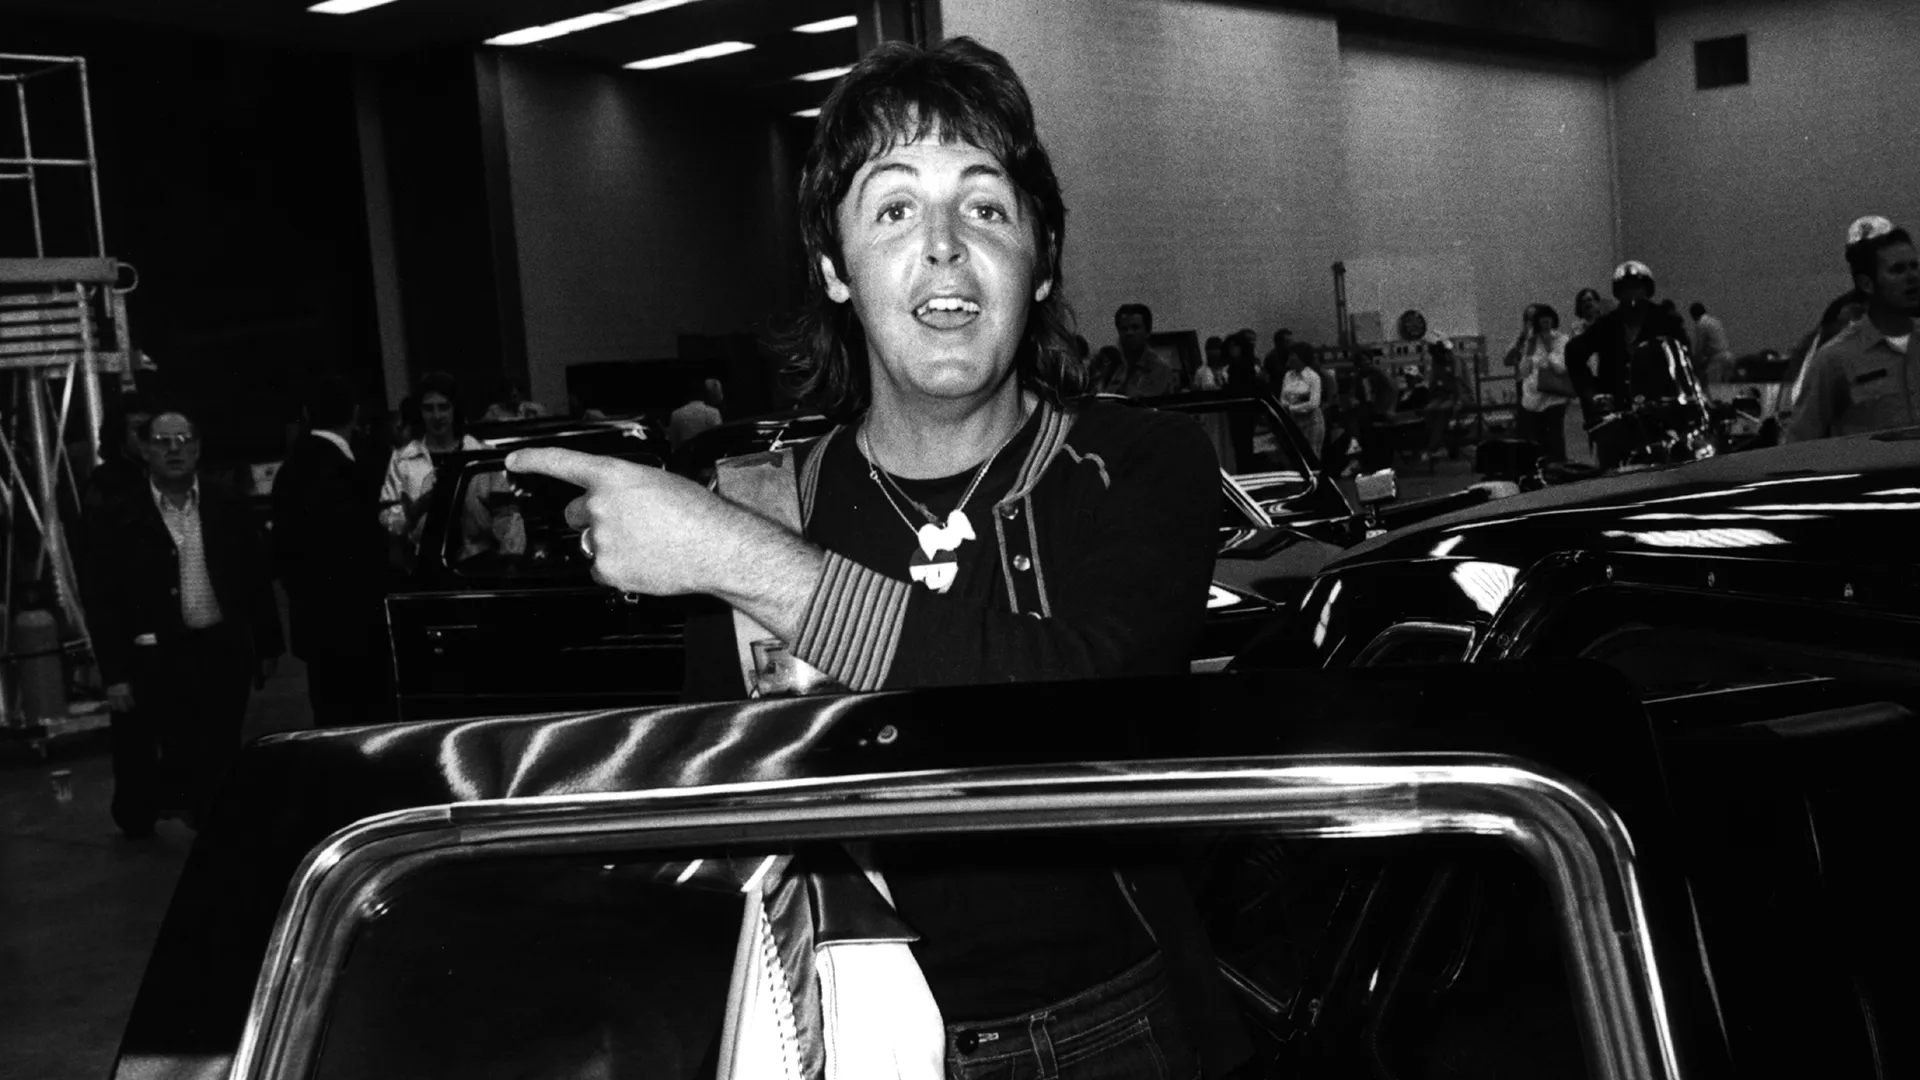 1920x1080 Paul McCartney's car collection is a tour de force | British GQ